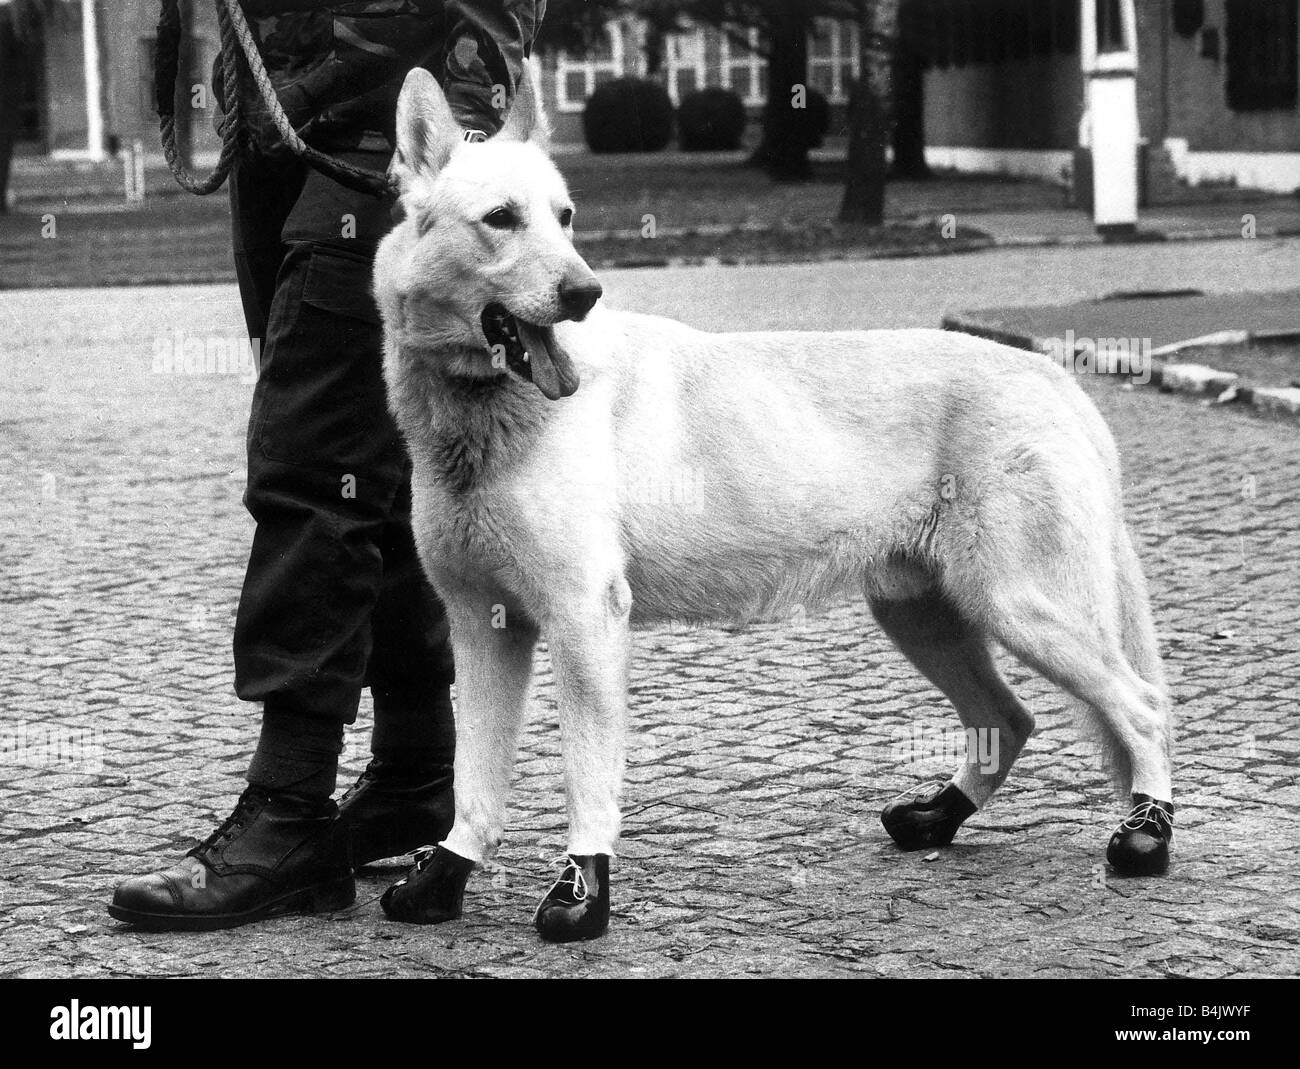 L'Armée de mars 1983 animaux alsacienne tous les soldats ont besoin de bonnes bottes solides pour square bashing et chien de garde de l'Armée de Brice n'est pas une exception ici il montre son spécialement fait boots Banque D'Images